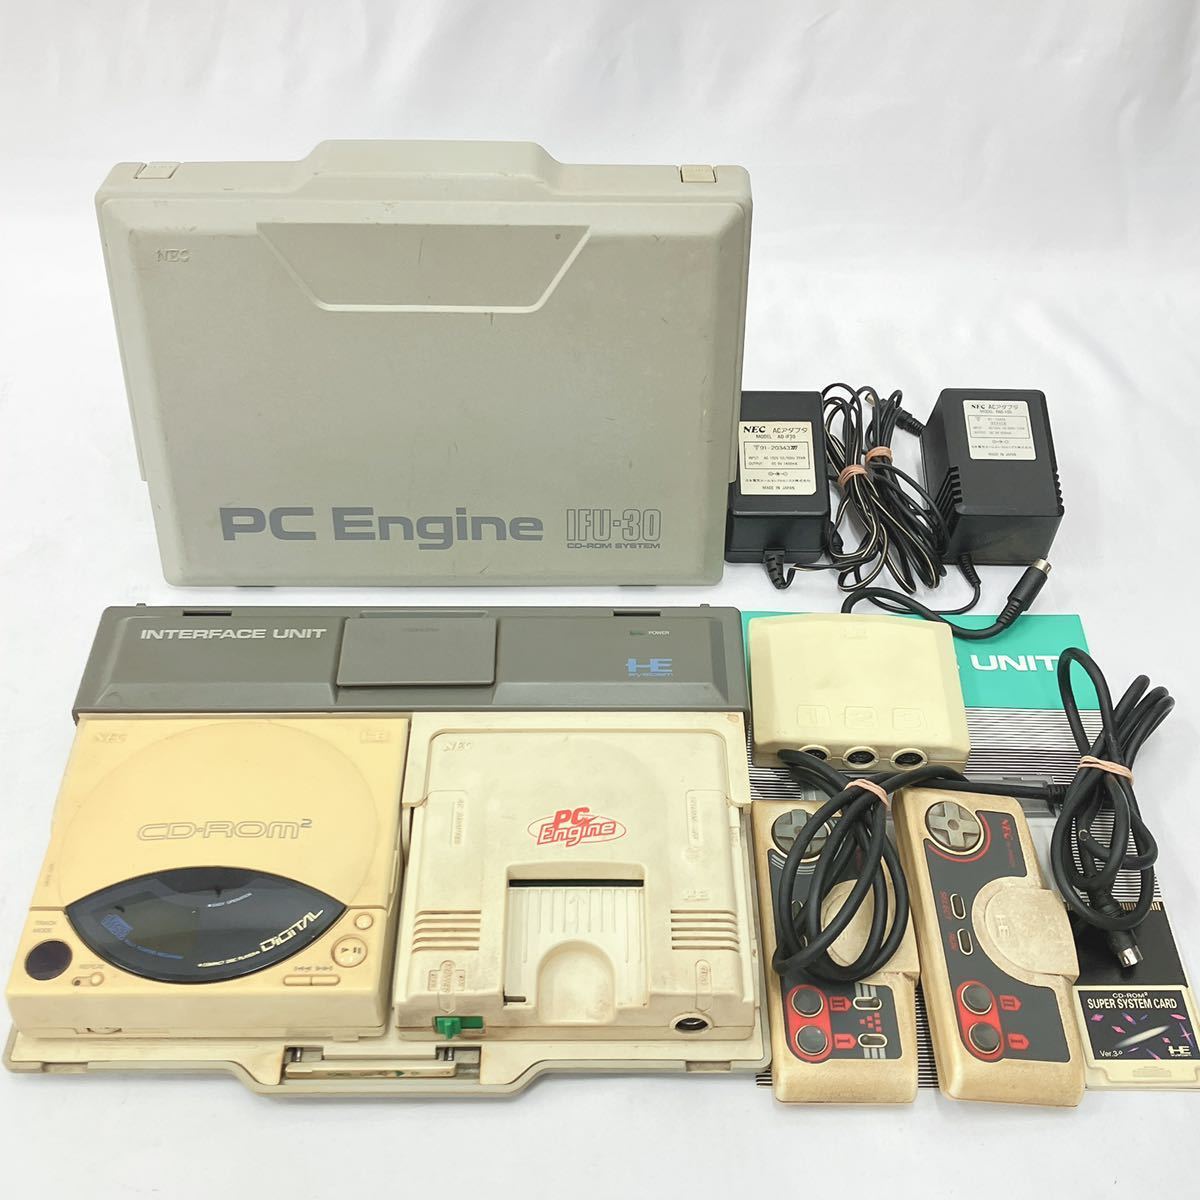 修理済 PCE PCエンジン CD-ROM2 システム CDR-30A 本体 